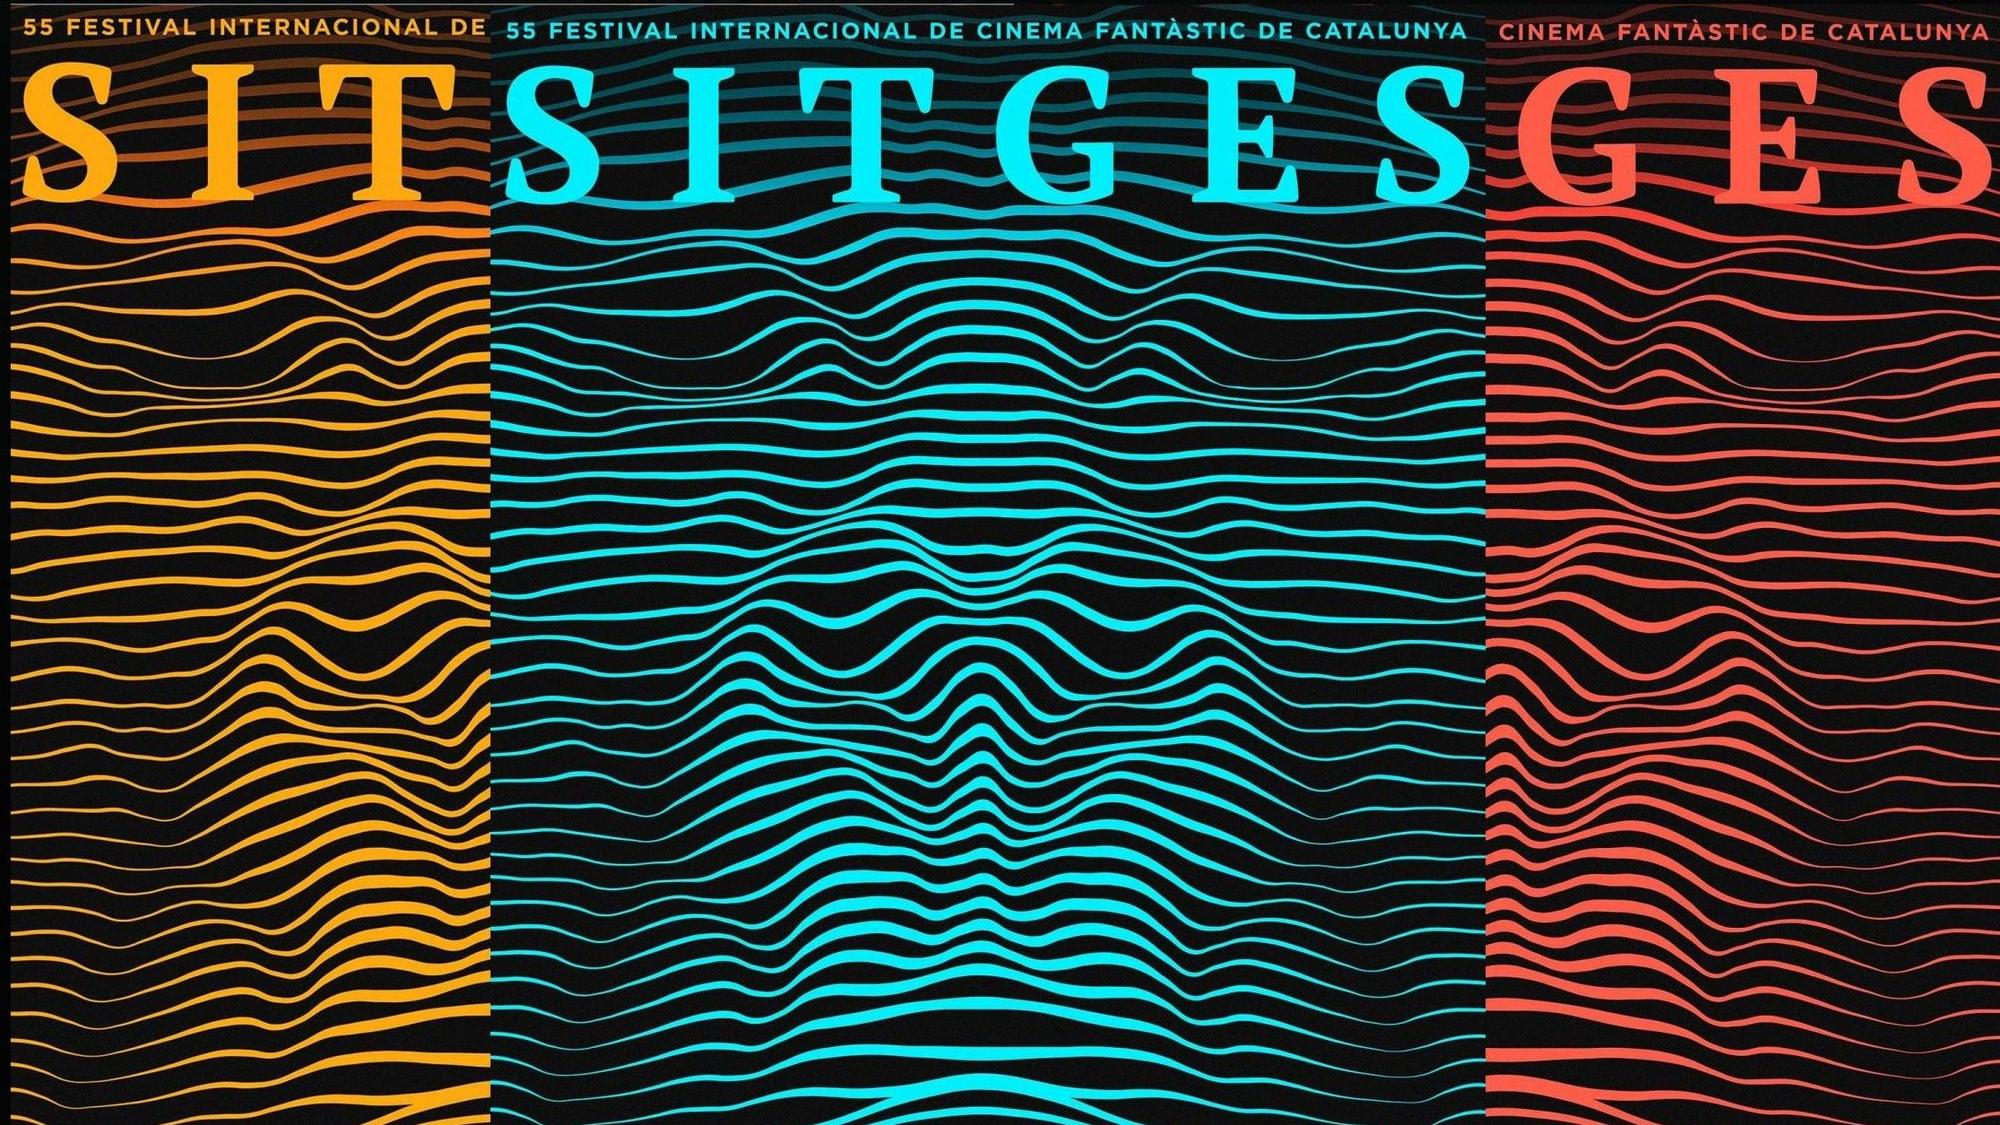 Detalle del cartel oficial de Sitges-2022, dedicado a los 40 años de 'Tron'